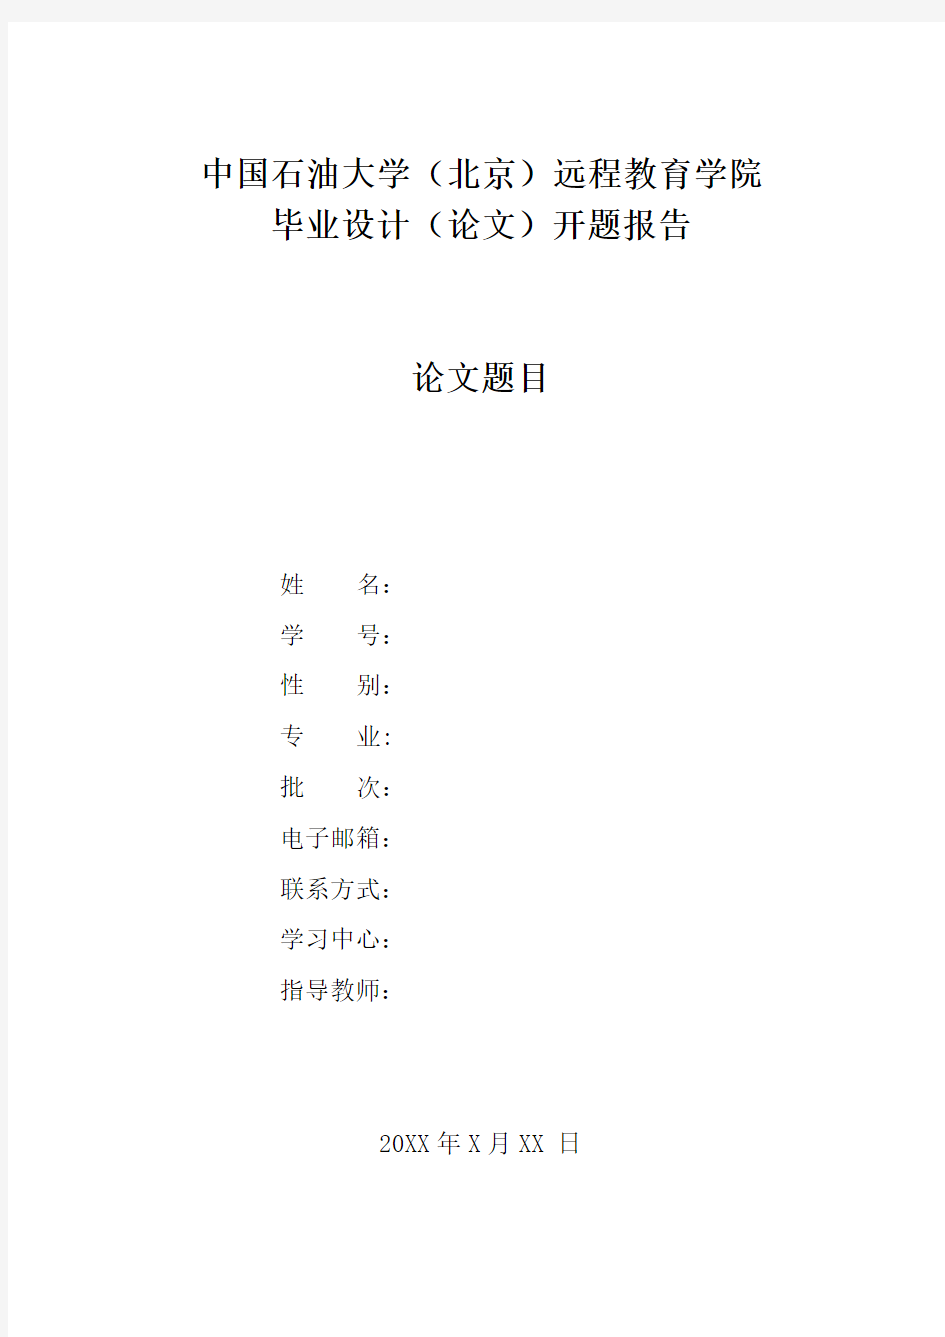 中国石油大学(现代远程教育)毕业设计(论文)开题报告模版